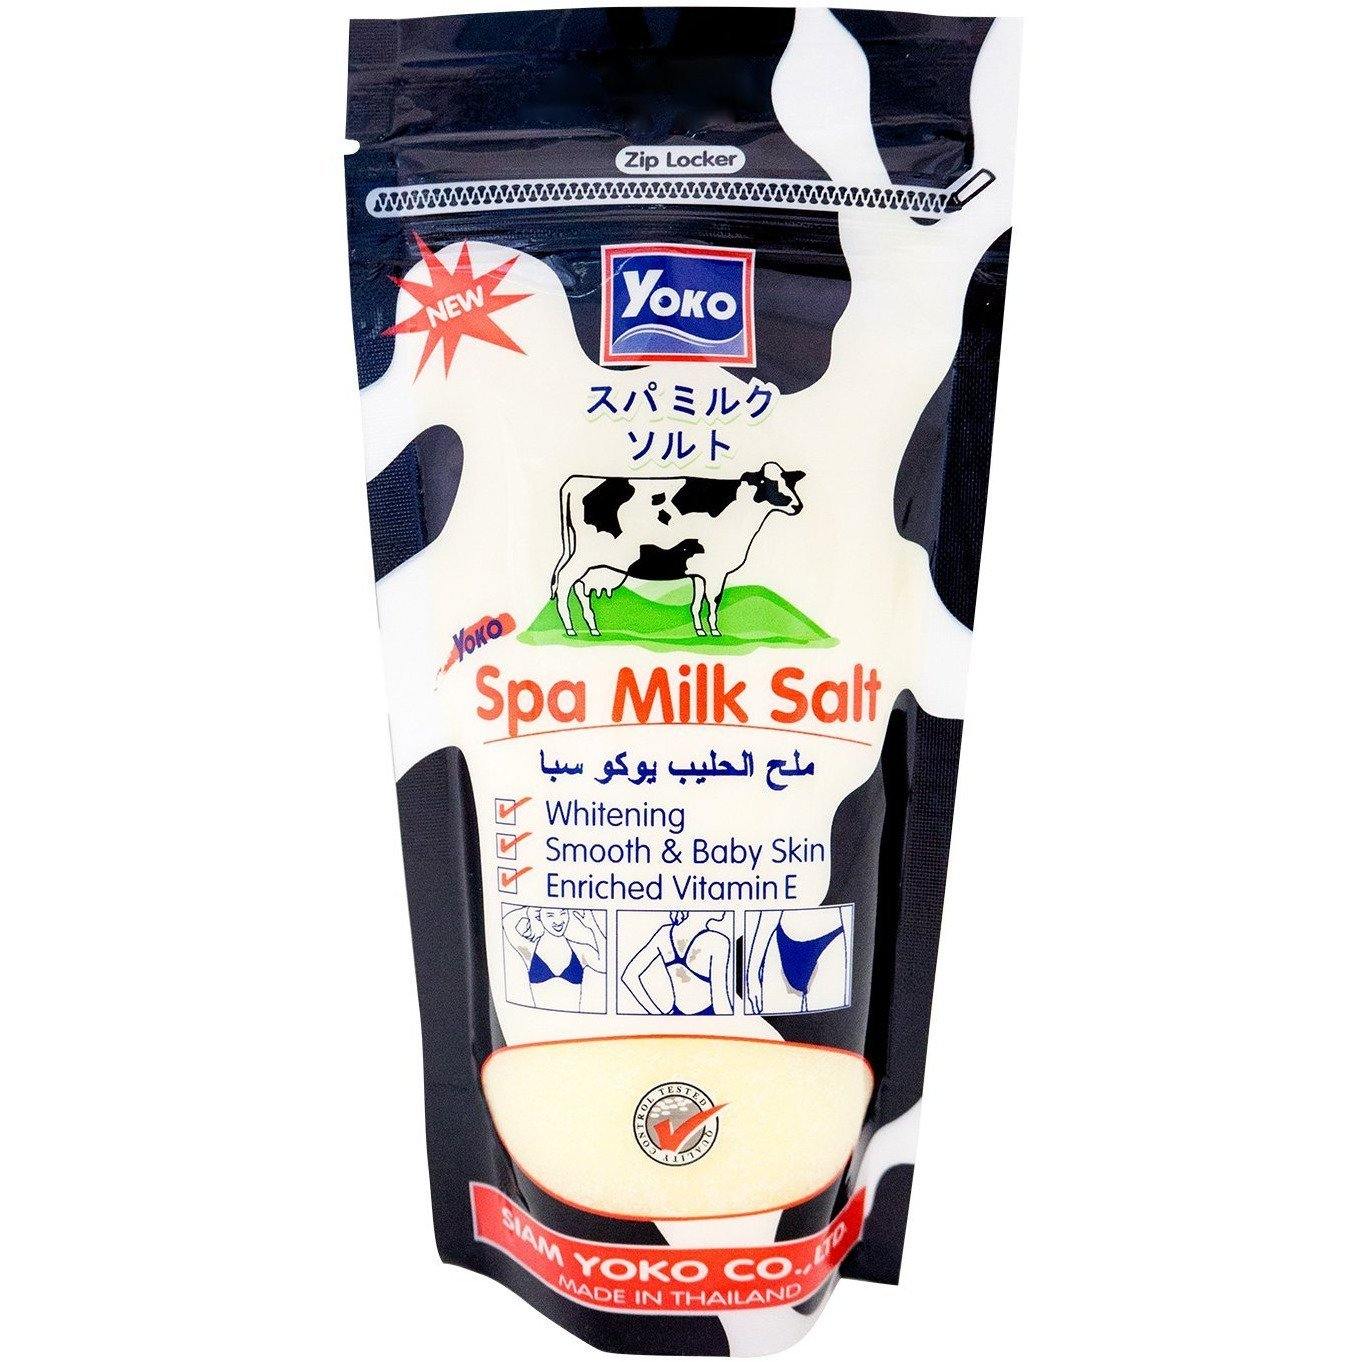 ملح الحليب يوكو سبا